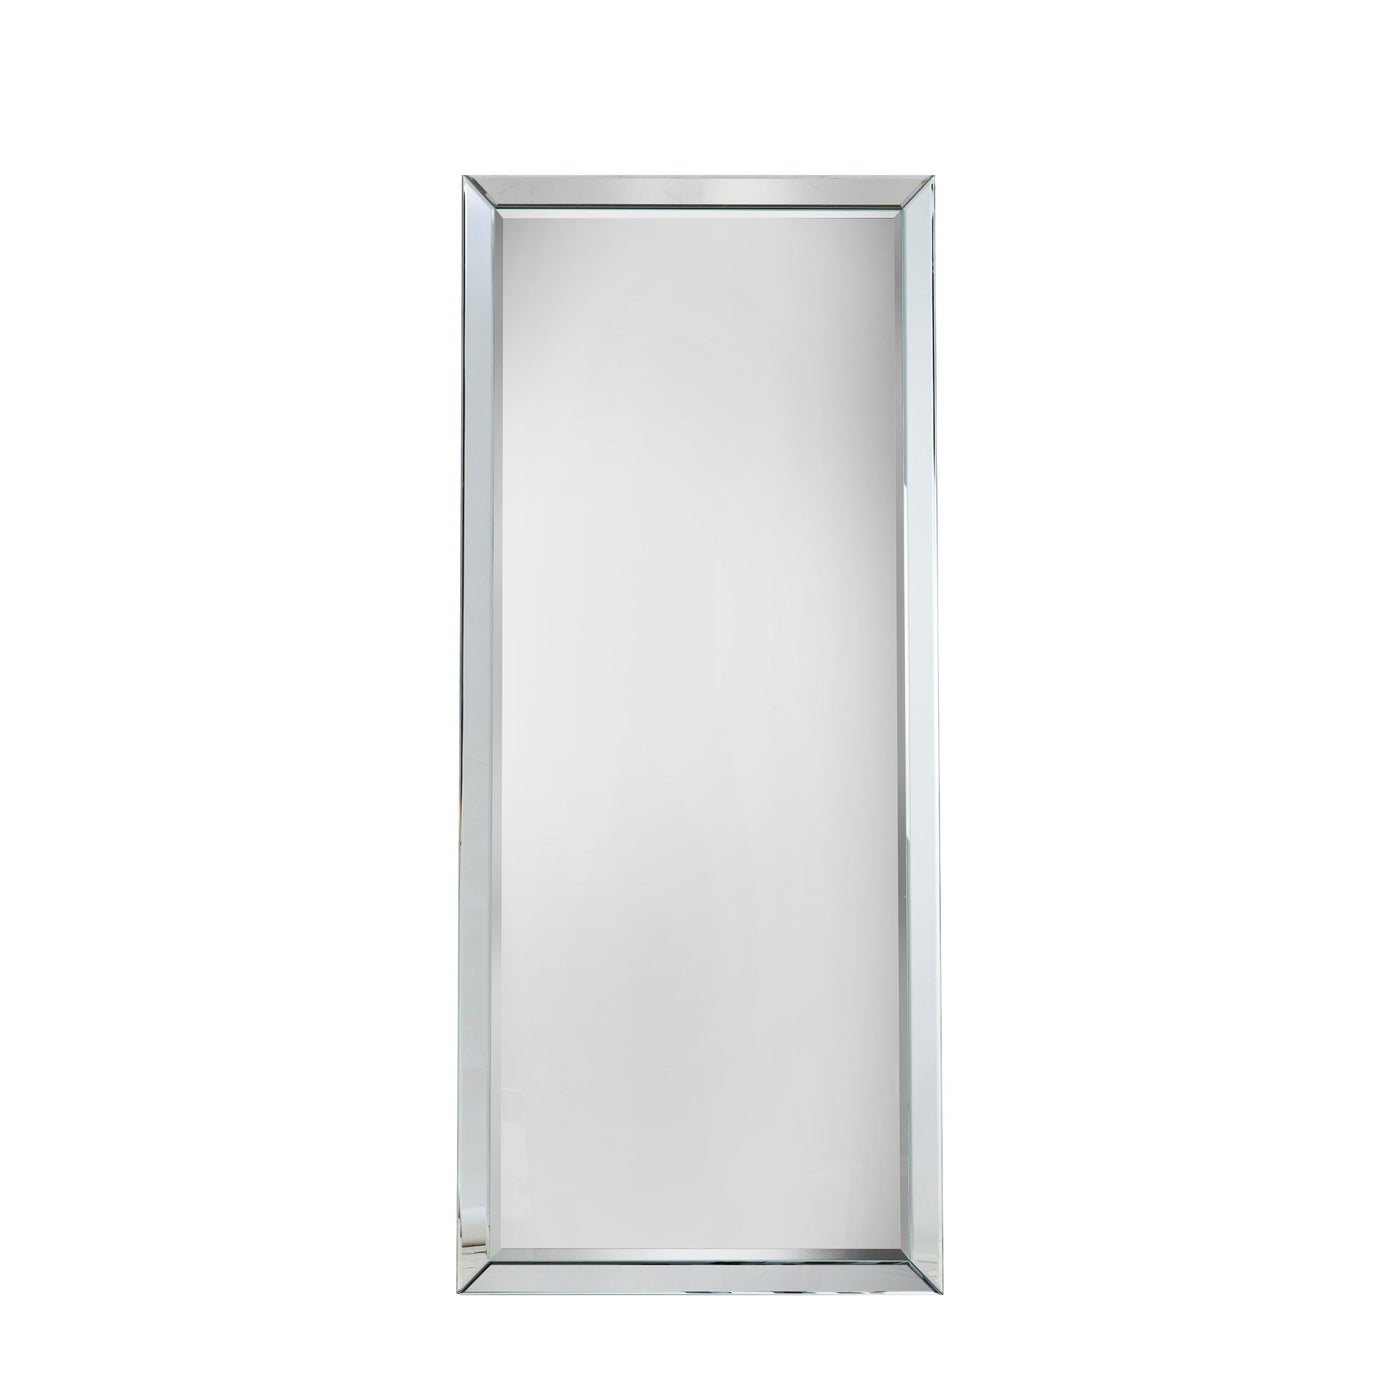 Cubert Leaner Mirror - 178cm x 78cm